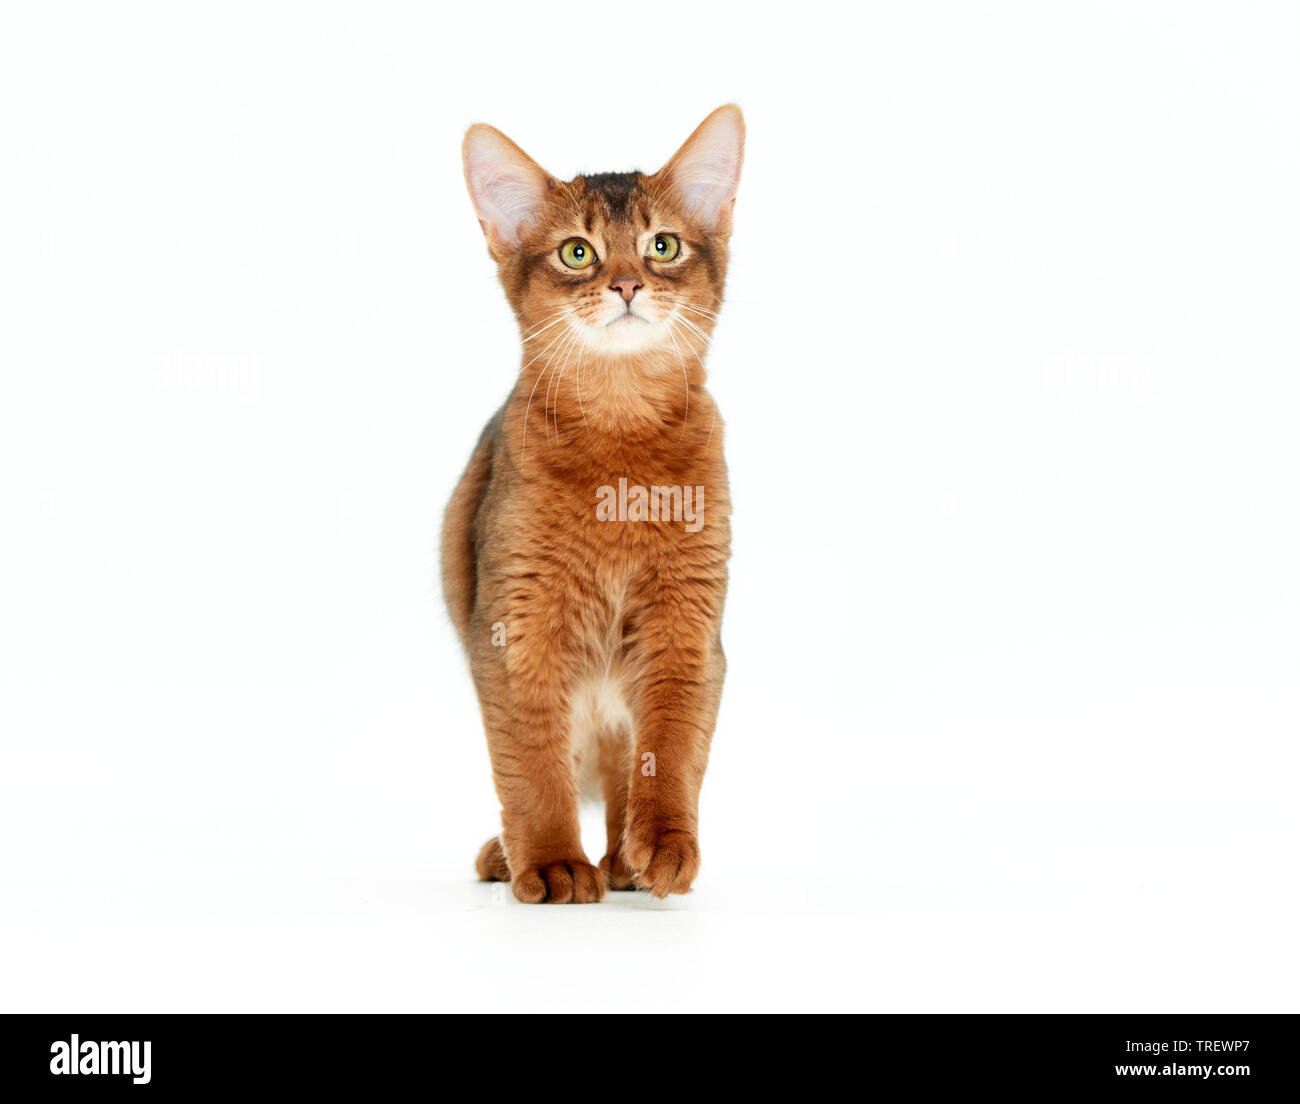 Gatto somalo. Kitten passeggiate, visto testa-a. Studio Immagine contro uno sfondo bianco Foto Stock